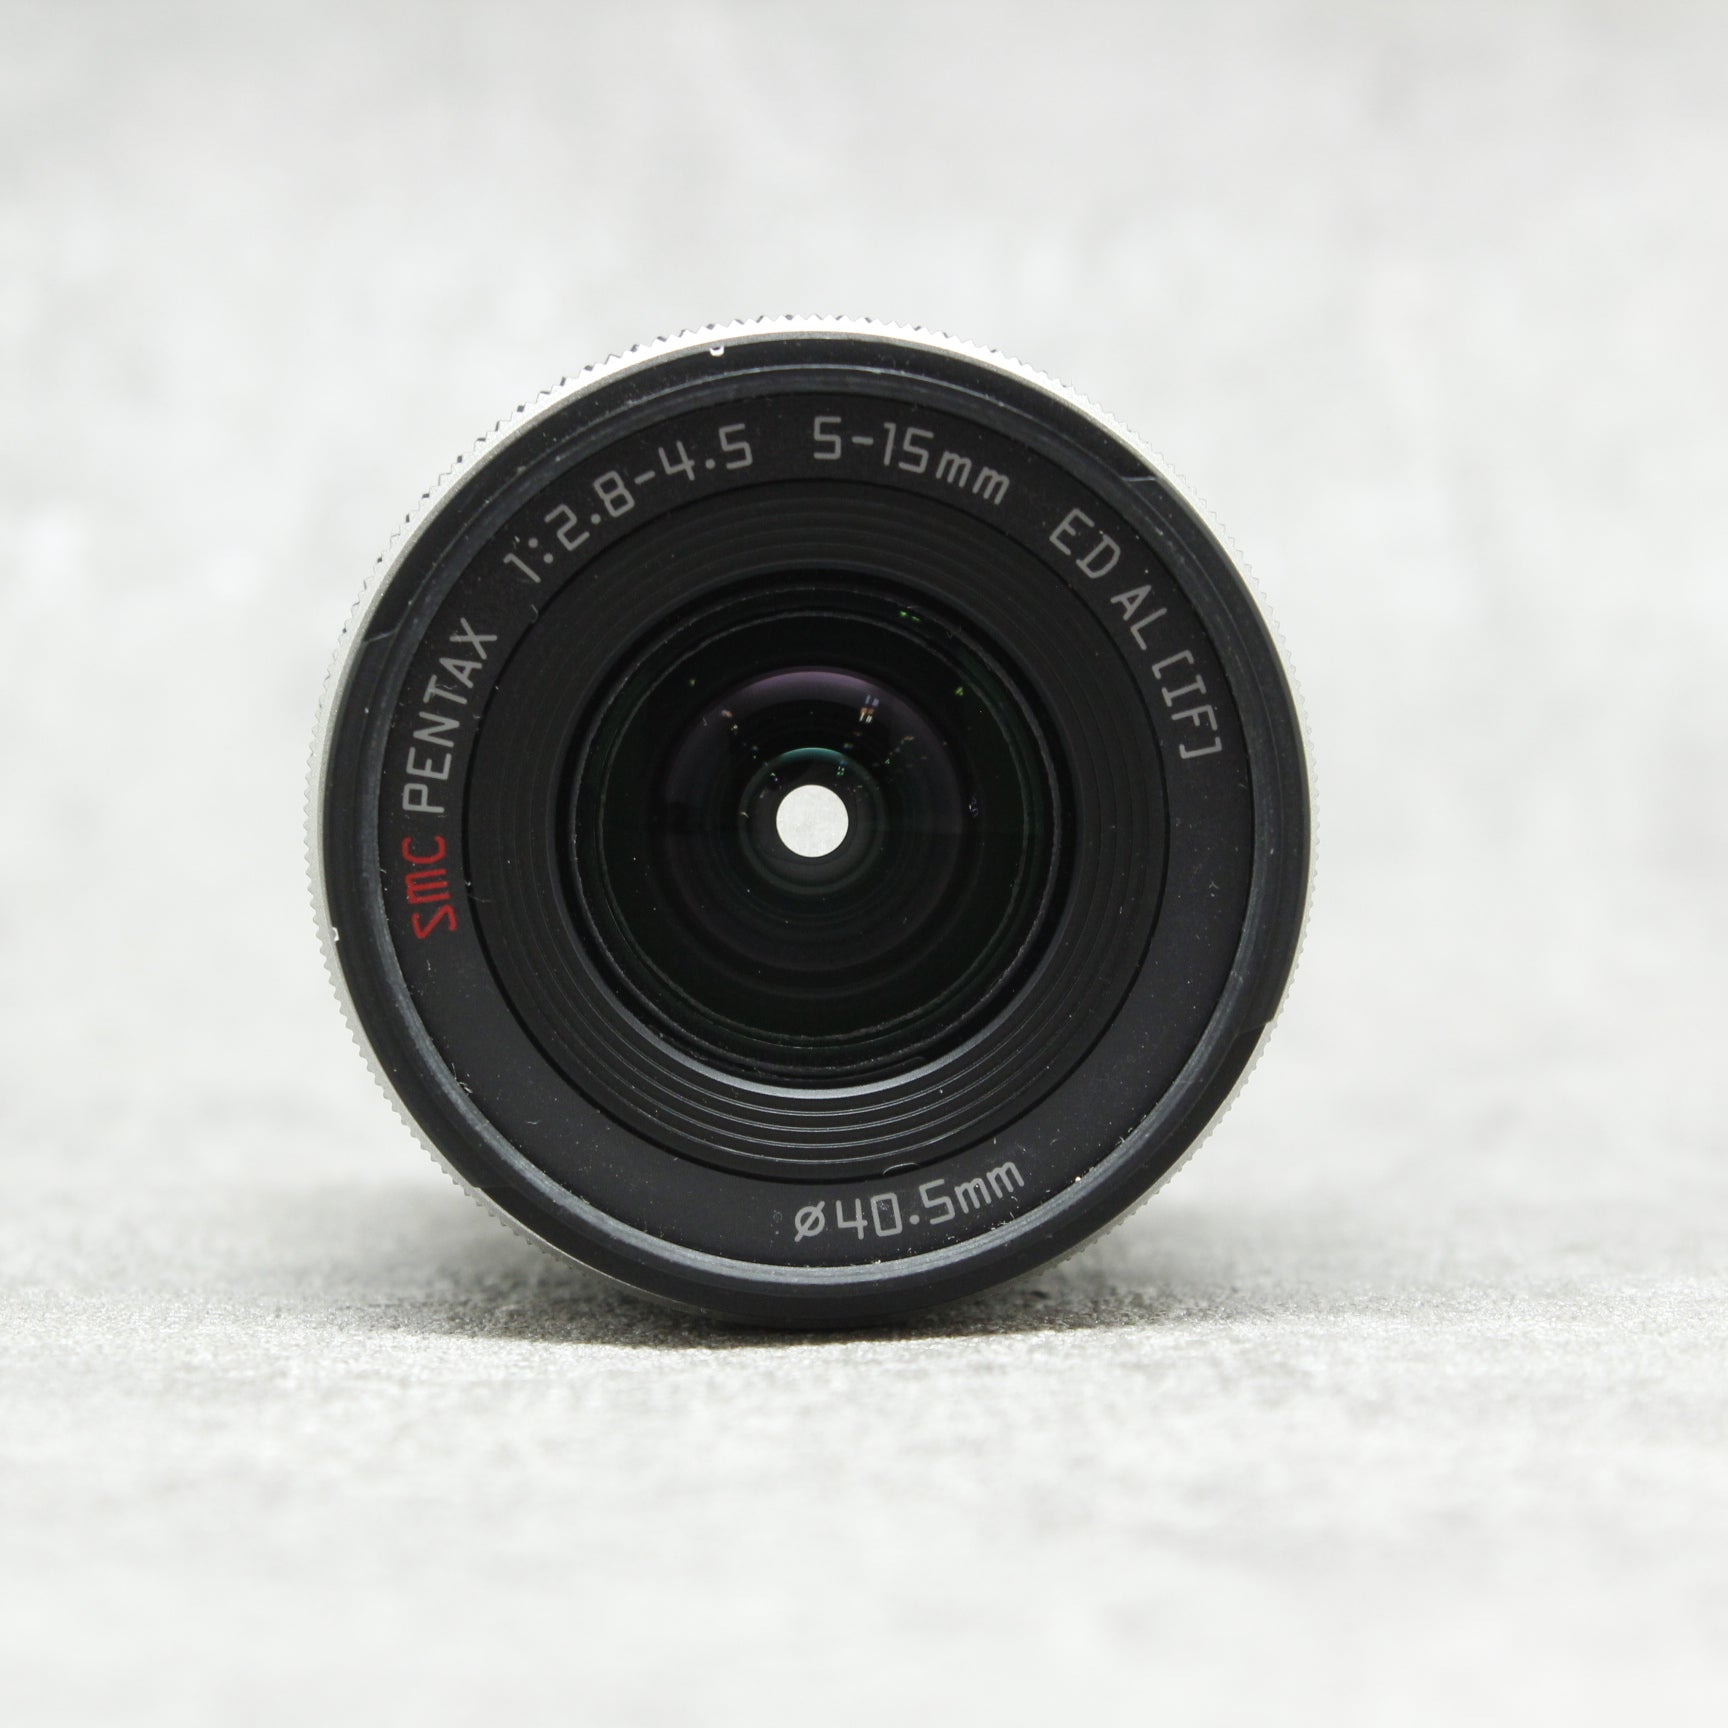 ペンタックス SMC Pentax Zoom レンズ 5-15mm - レンズ(ズーム)